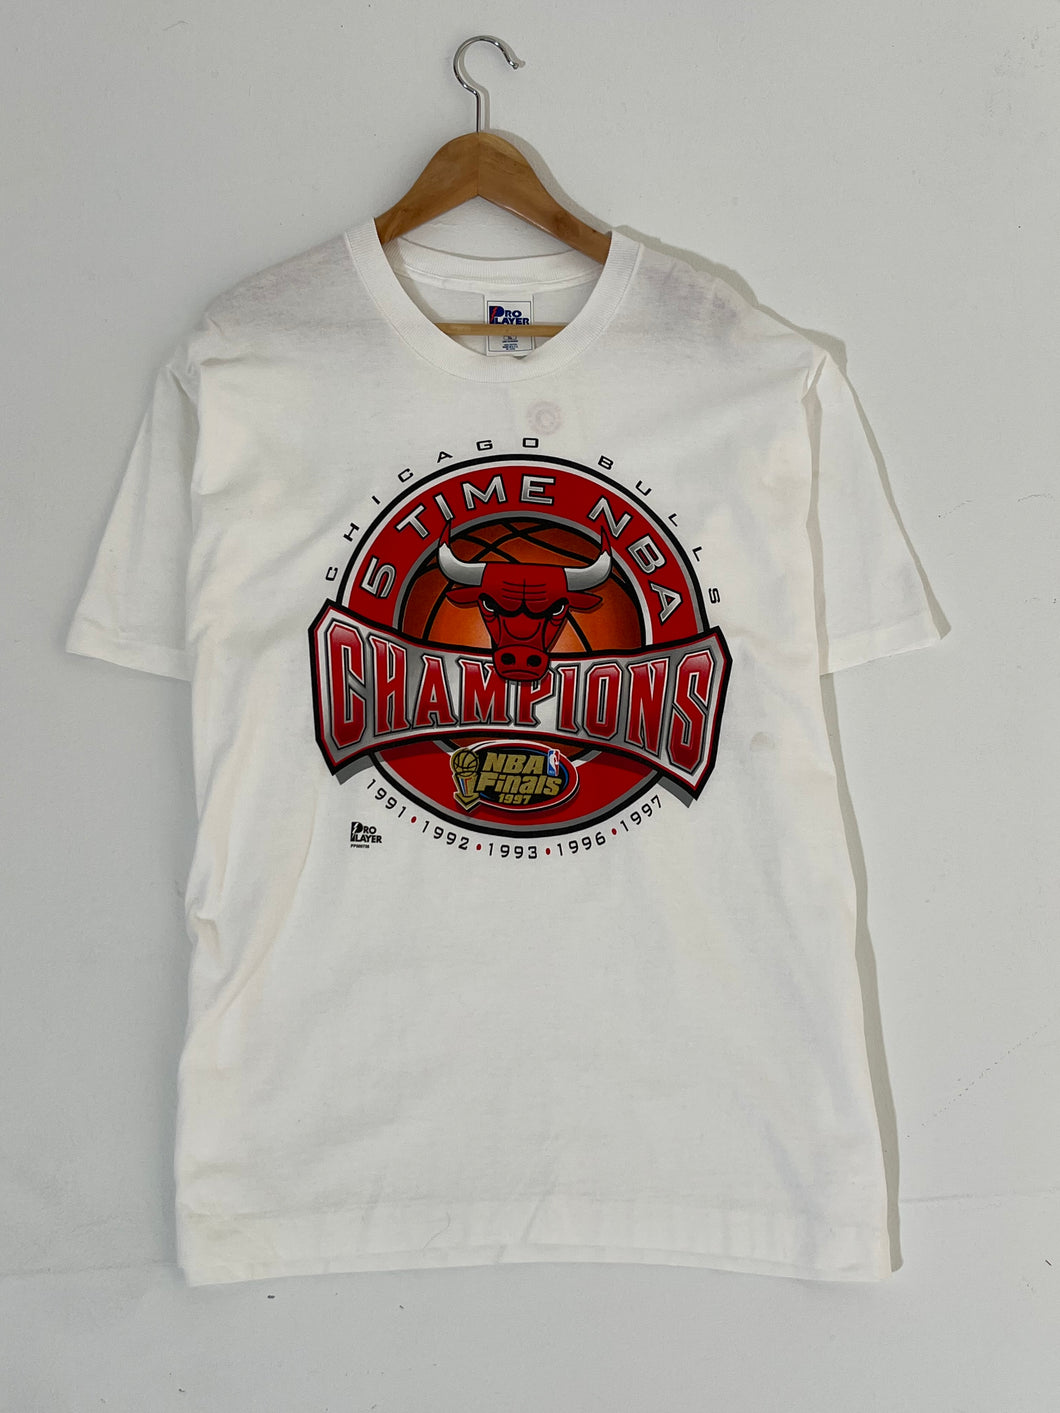 1997 Nba Champions Shirt, Chicago Bulls Shirt 1991 1992 1993 1996 Nba  Champs Shirt